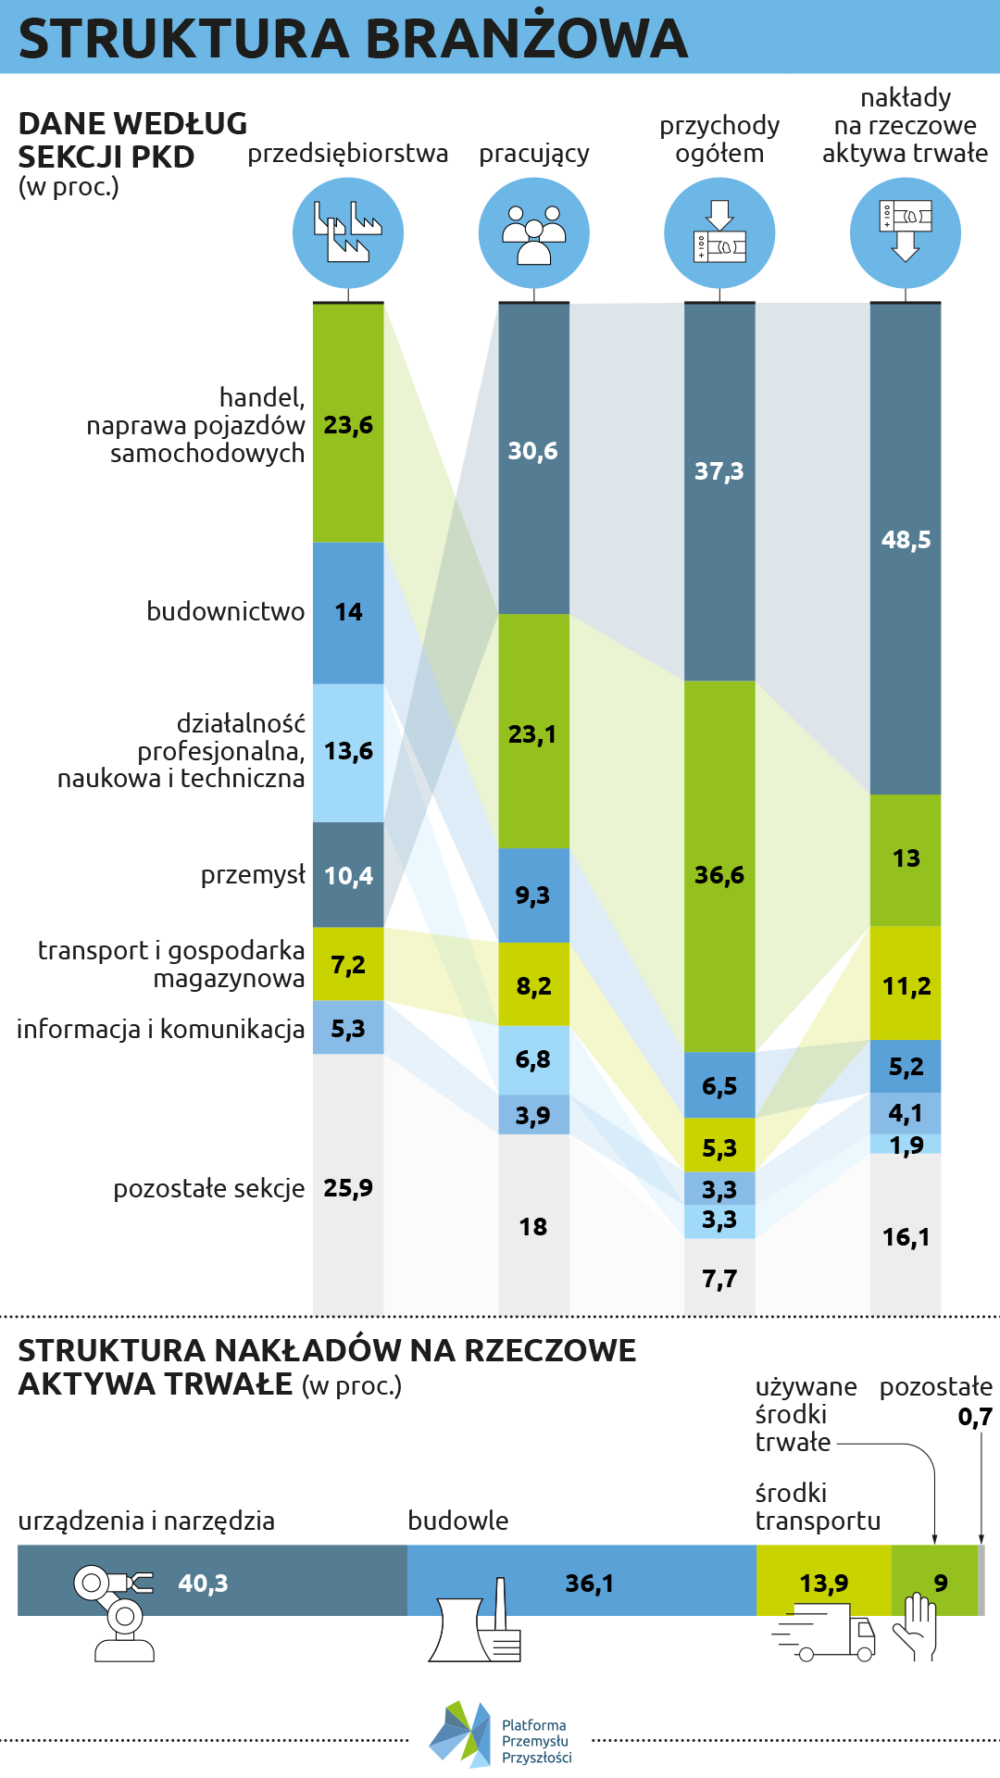 Struktura branżowa firm w Polsce na podstawie danych GUS z 2020 roku opisujących stan w 2018 - graf. Lech Mazurczyk